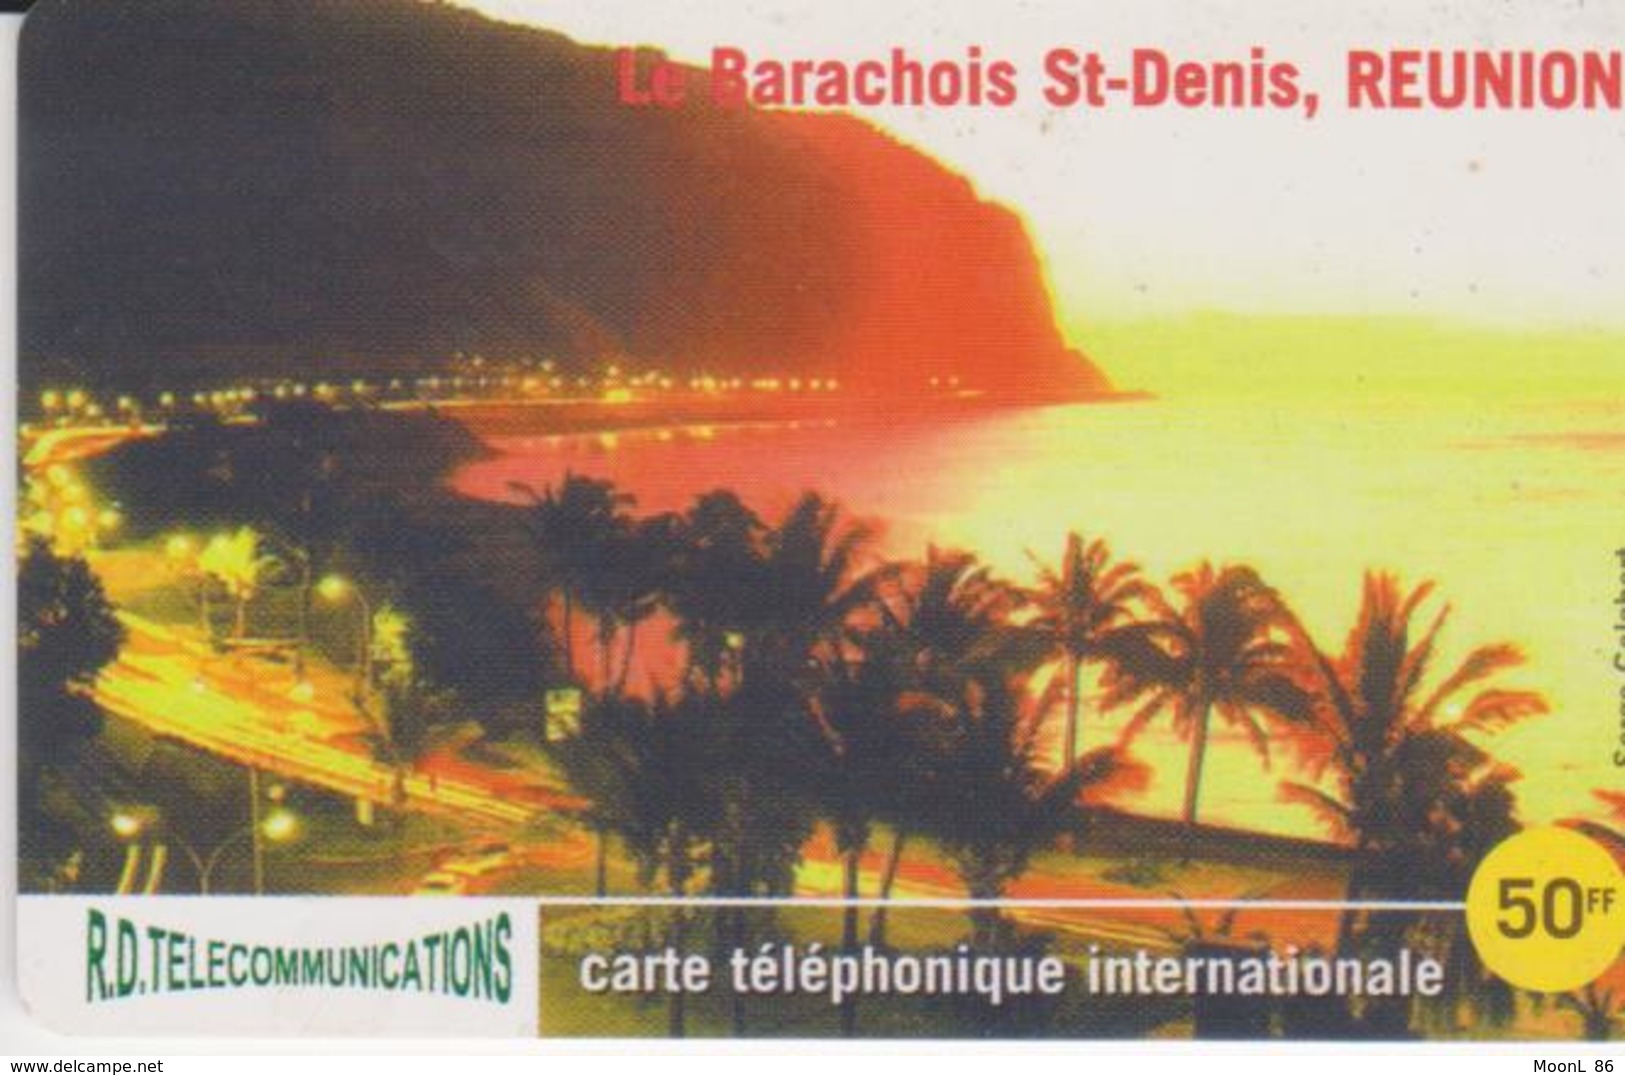 RARE Telecarte Carte Téléphone INTERNATIONALE  ILE DE LA REUNION  ST DENIS LE BARACHOIS  R.D. TELECOMMUNICATIONS  50 F - Réunion